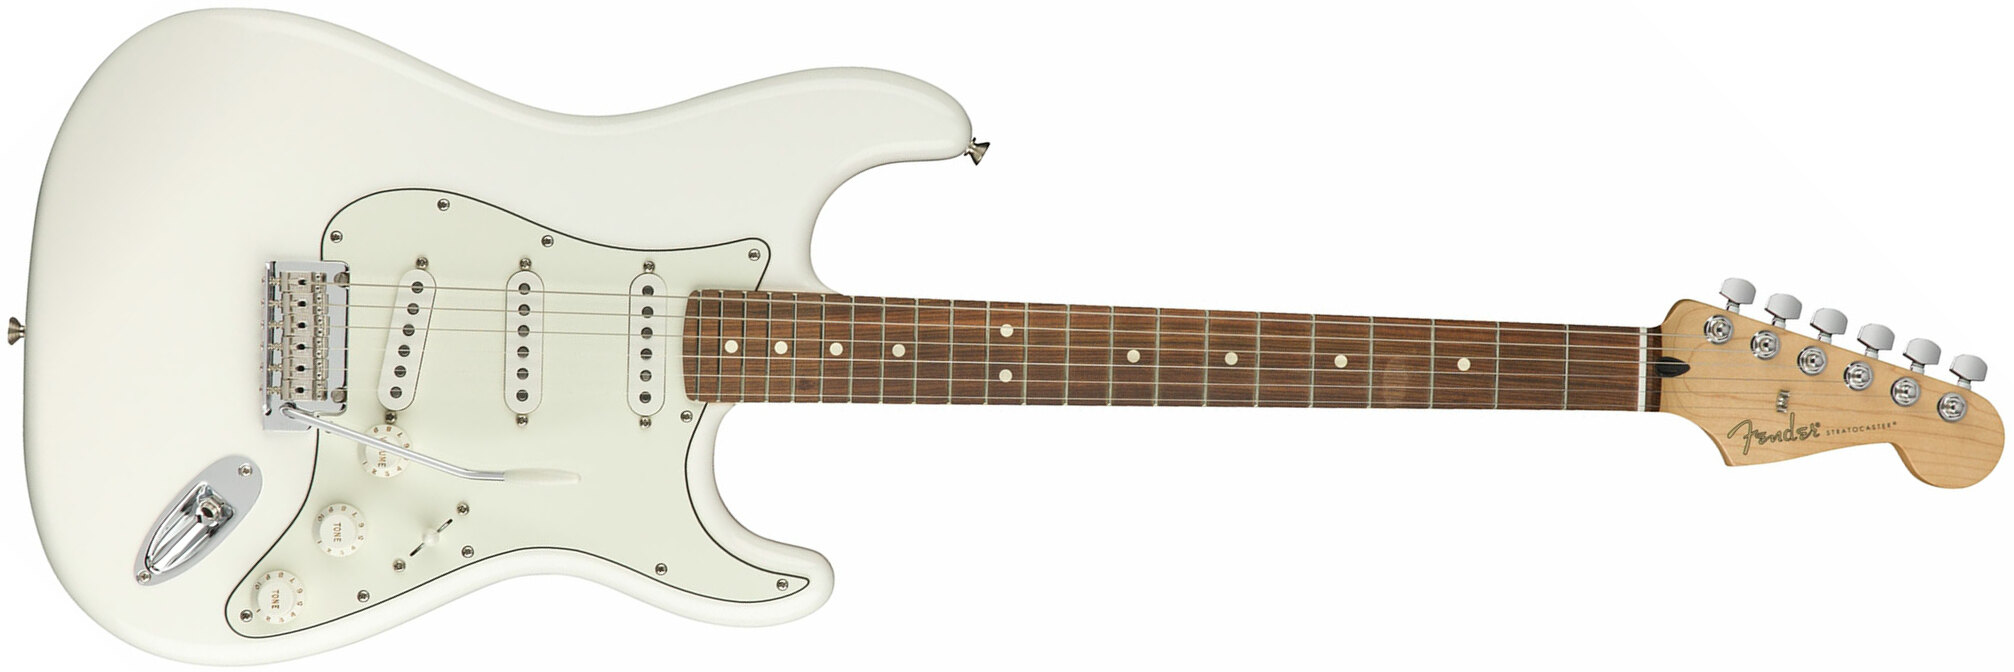 Fender Strat Player Mex Sss Pf - Polar White - Elektrische gitaar in Str-vorm - Main picture